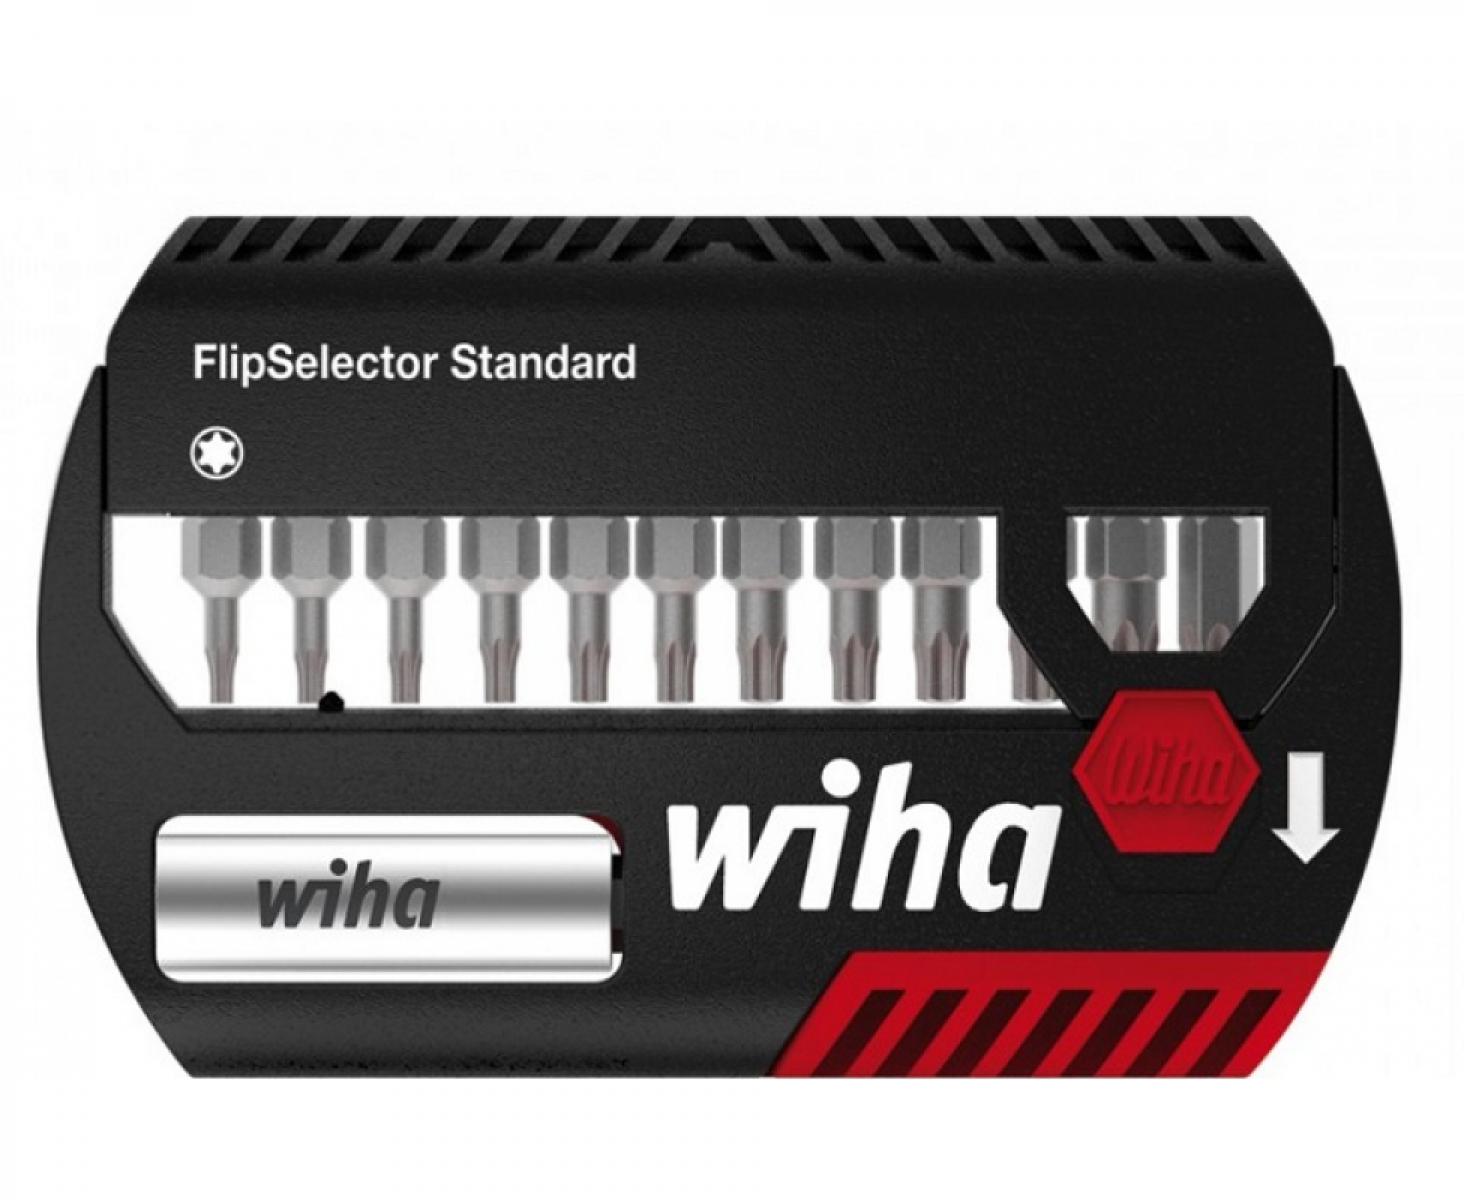 Набор с битами TX Wiha FlipSelector Standard SB 7947-505 39056, 13 предметов